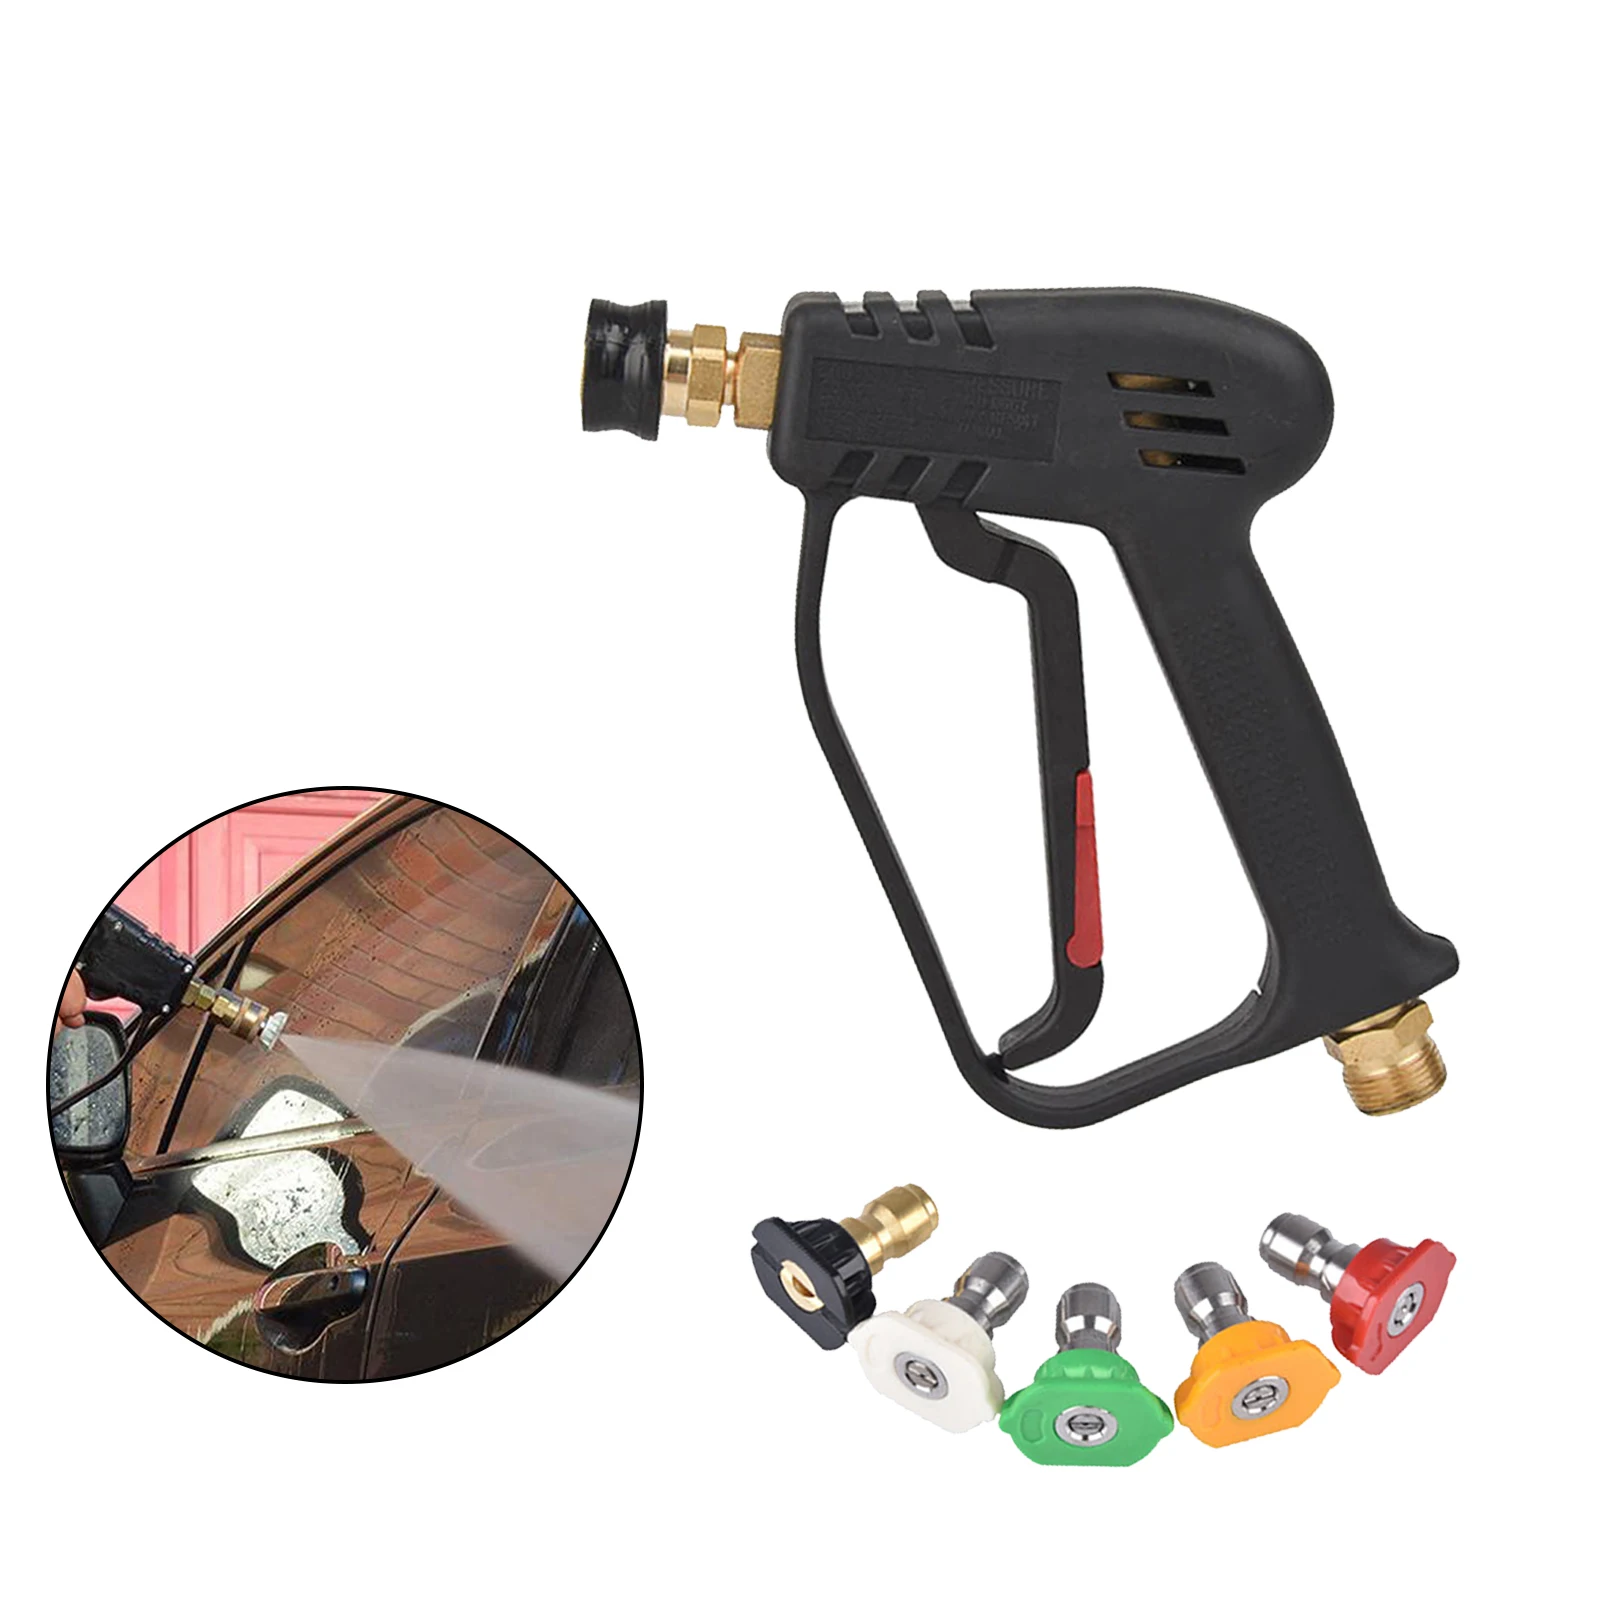 Replacement Pressure Washer Gun High Pressure Water Spray Gun Pistol 4000psi with 1/4